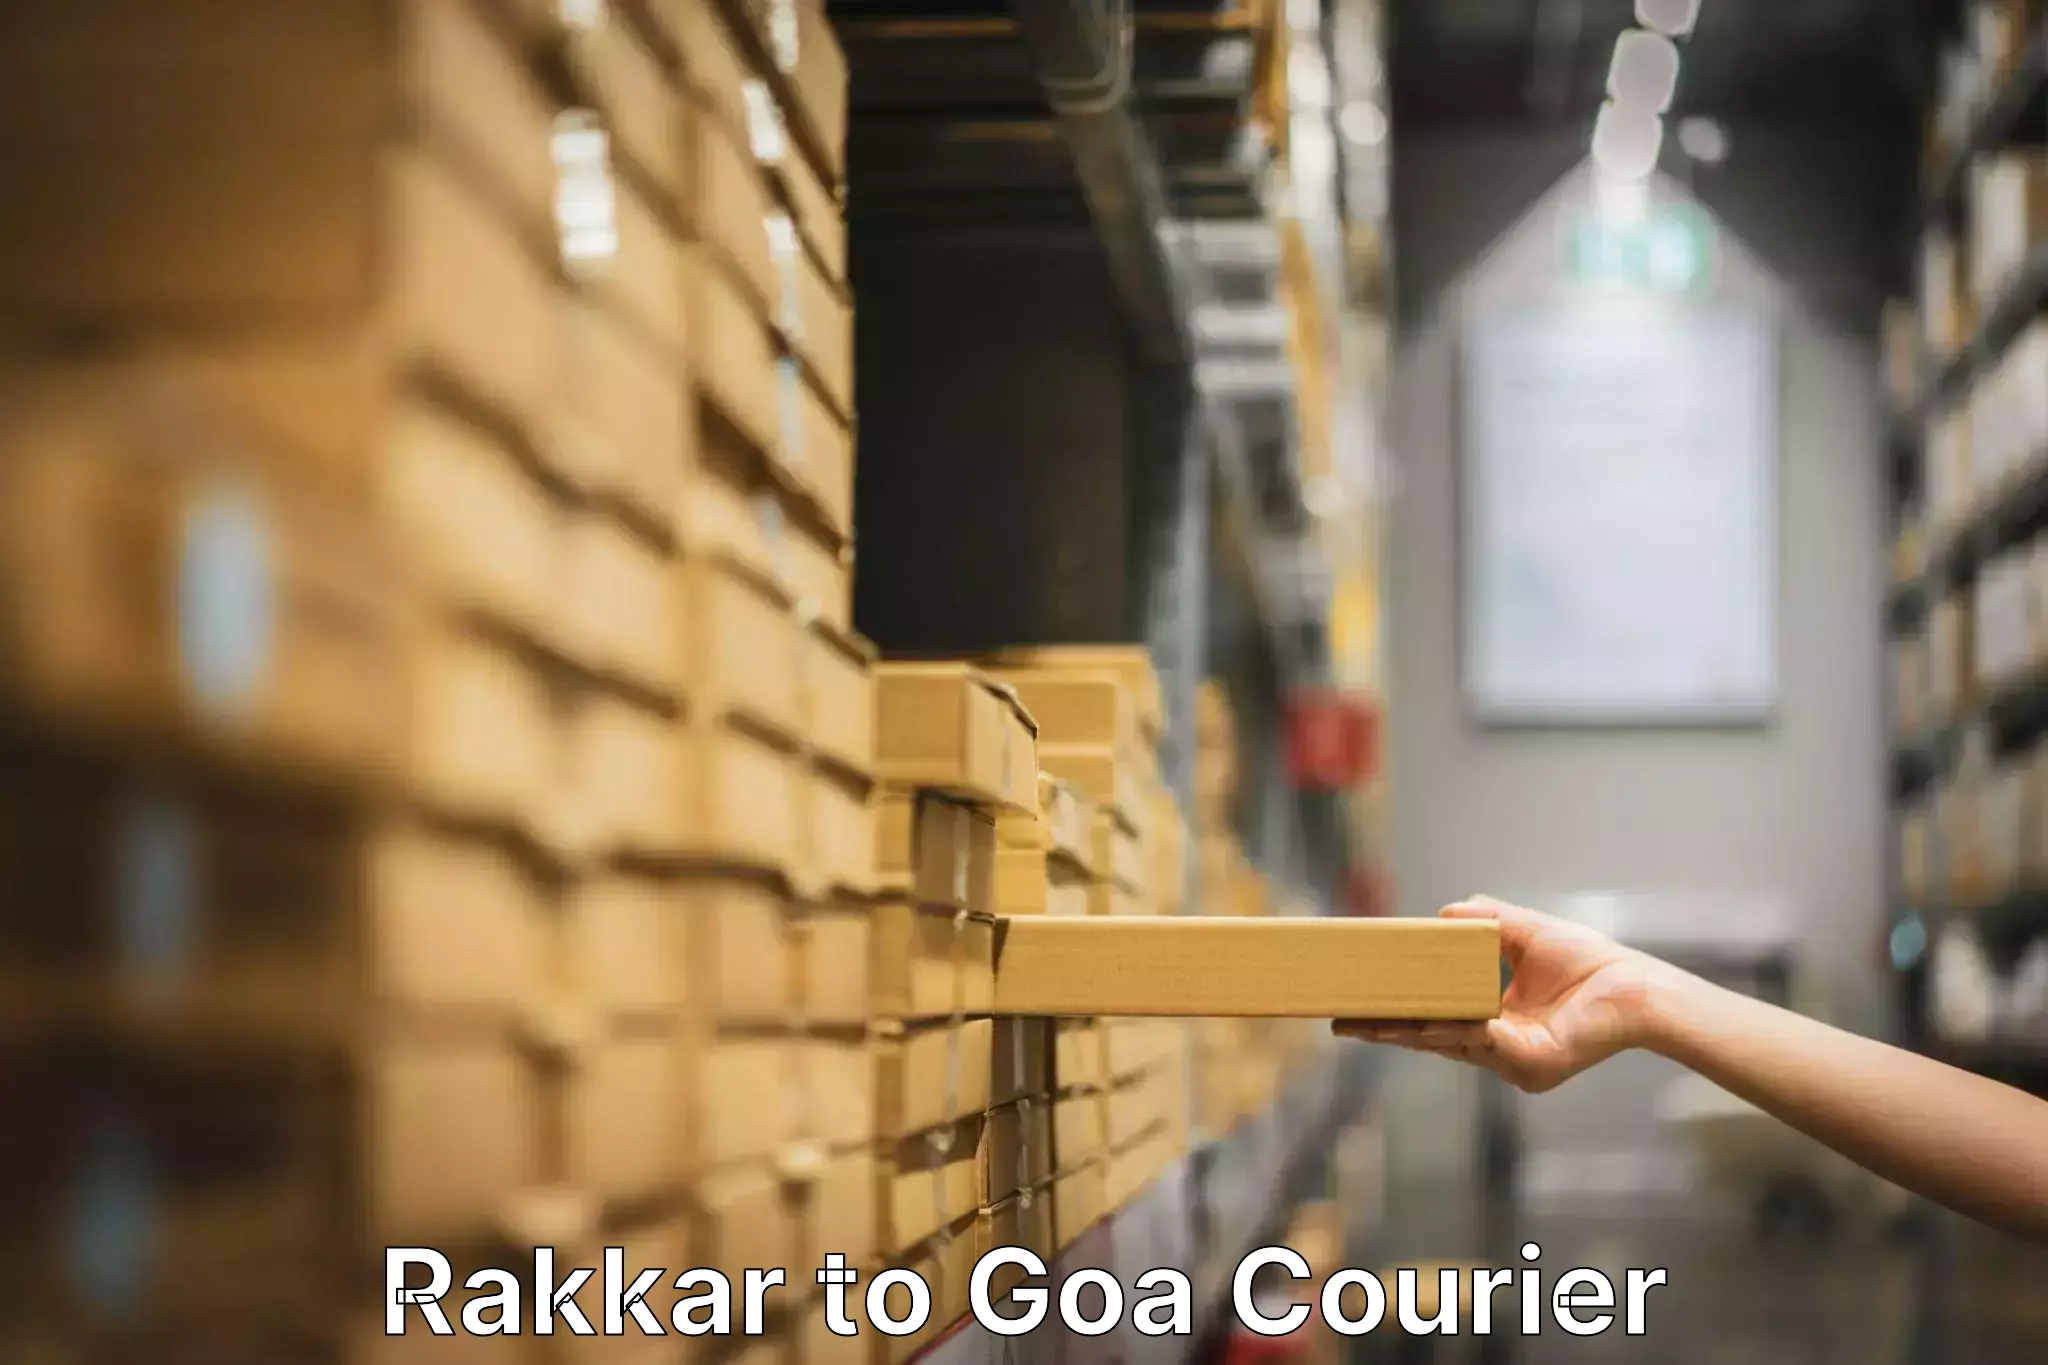 Home moving specialists Rakkar to Goa